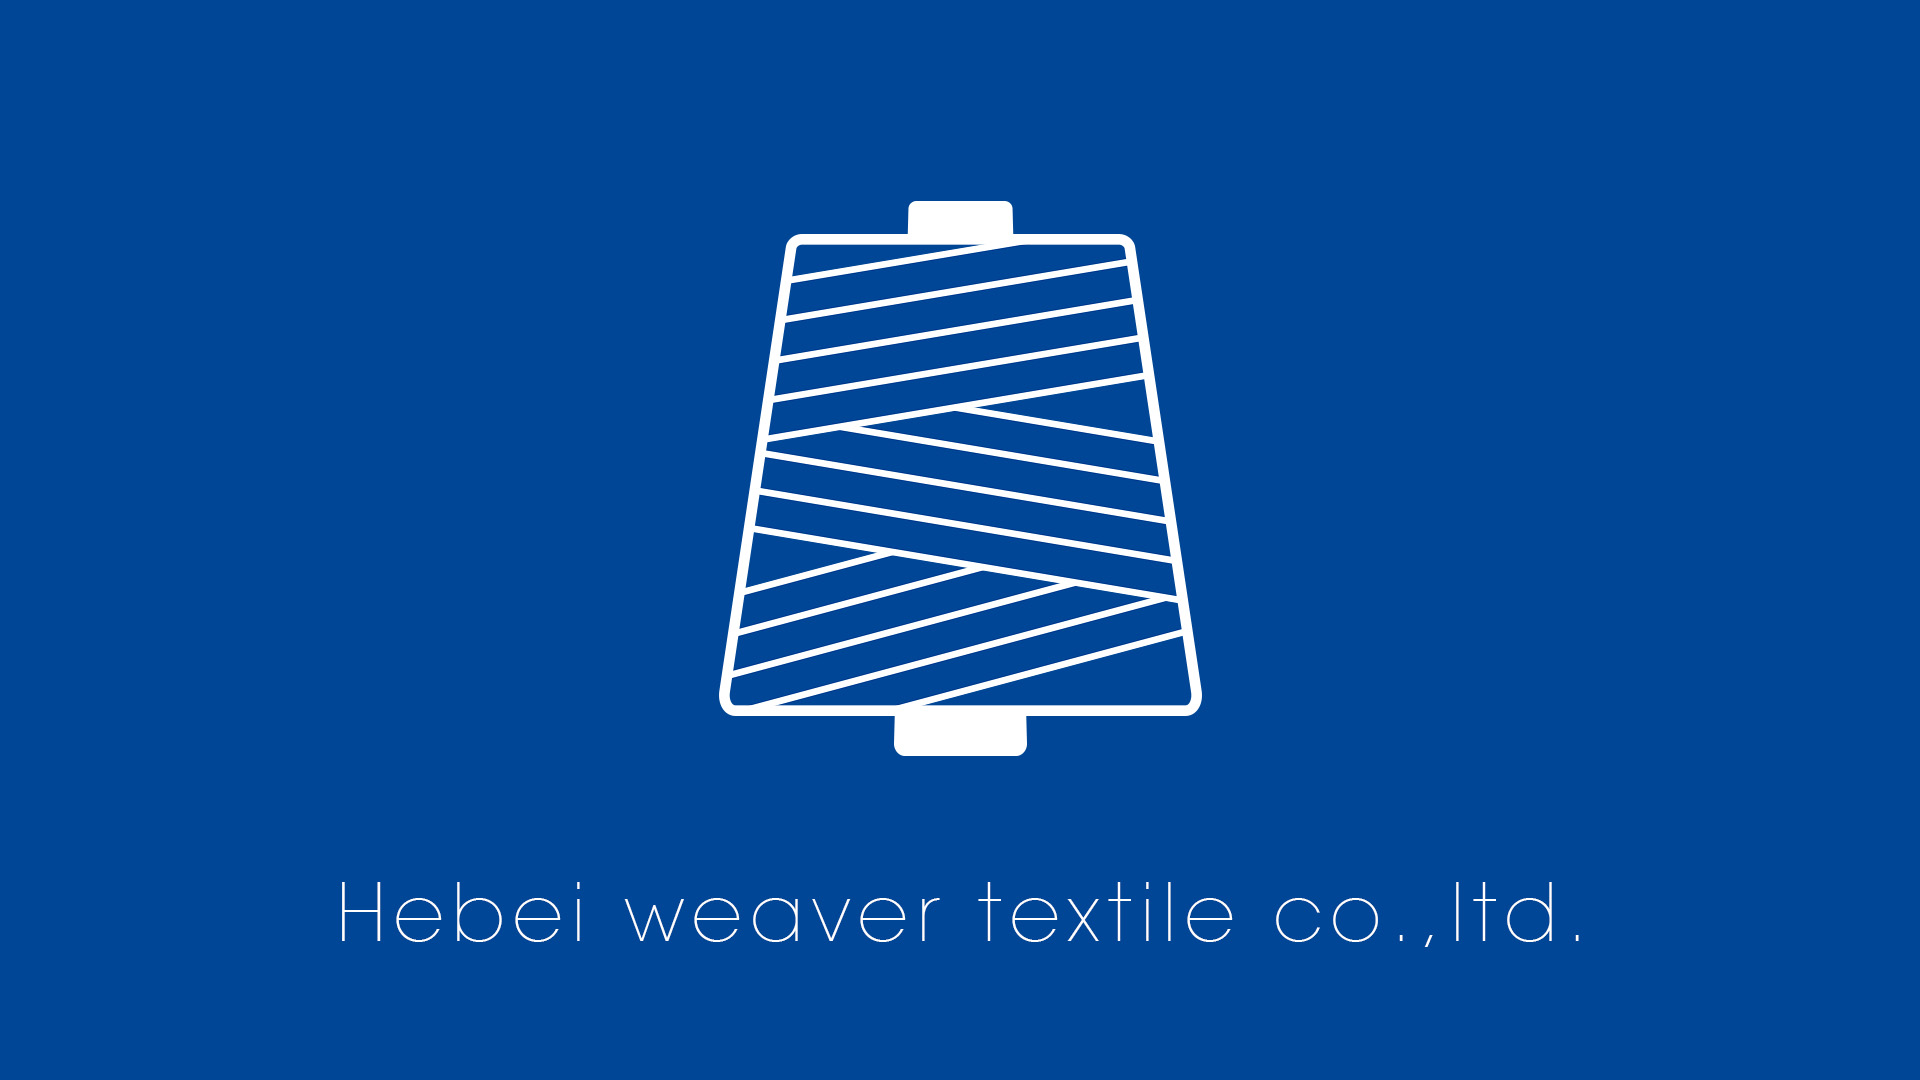 Hebei weaver textíl co., Ltd.